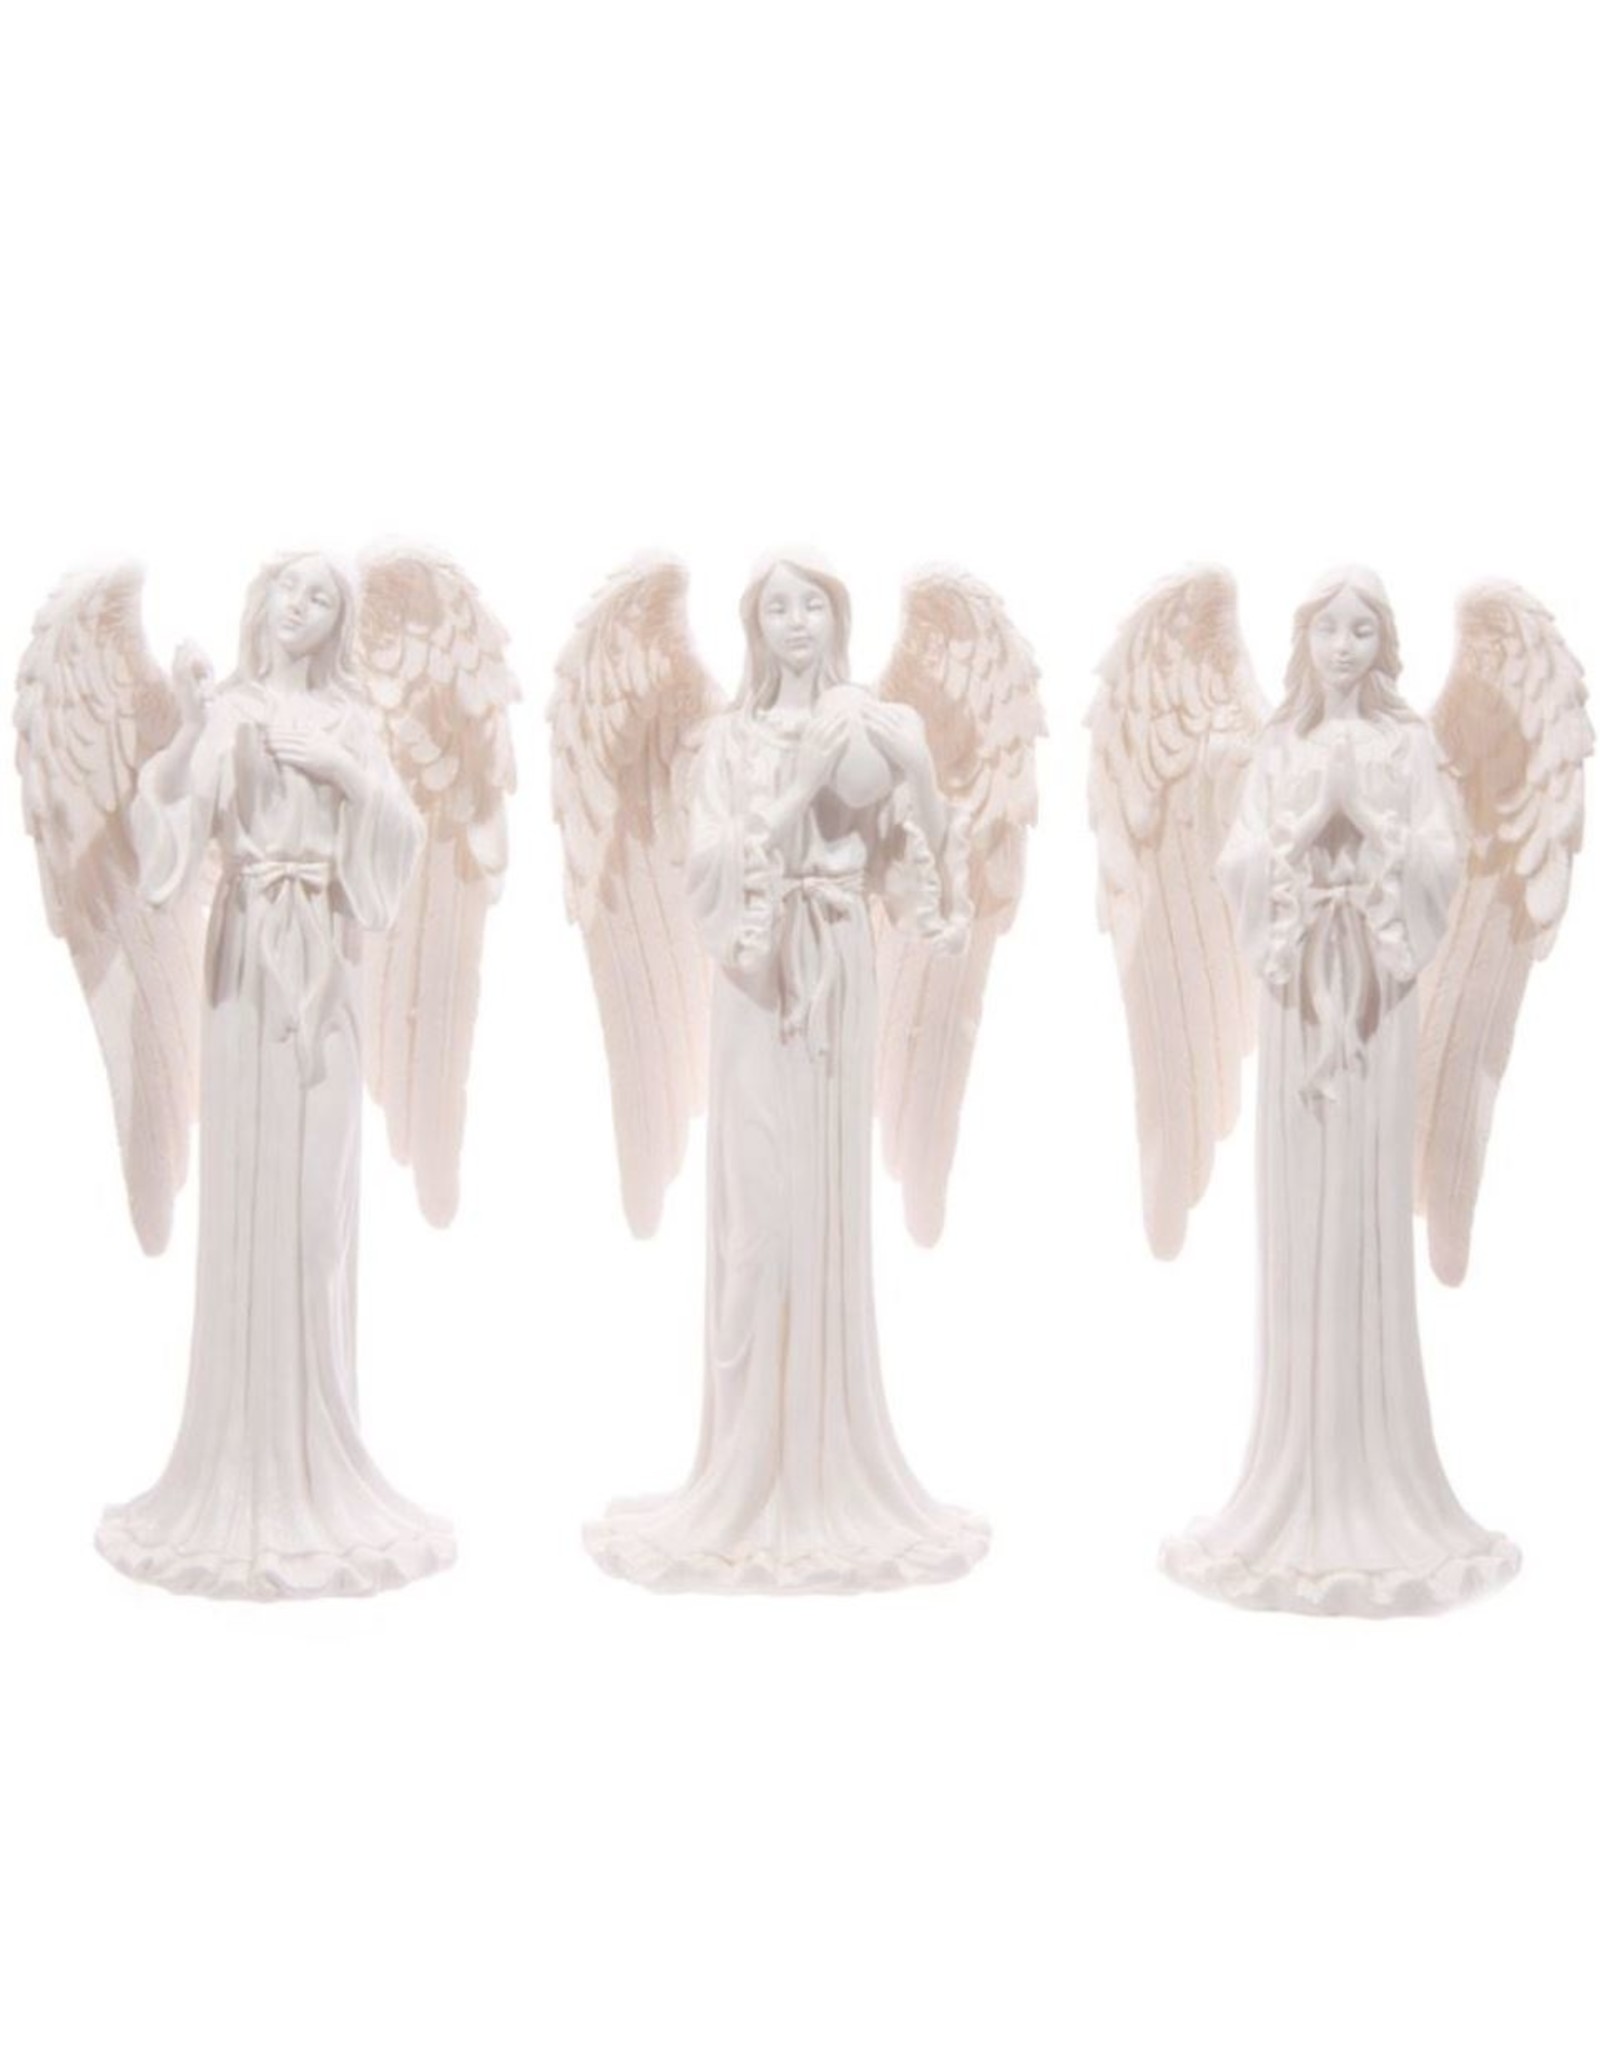 Trukado Giftware & Lifestyle - Witte Engel aan het bidden (staand) - 20cm